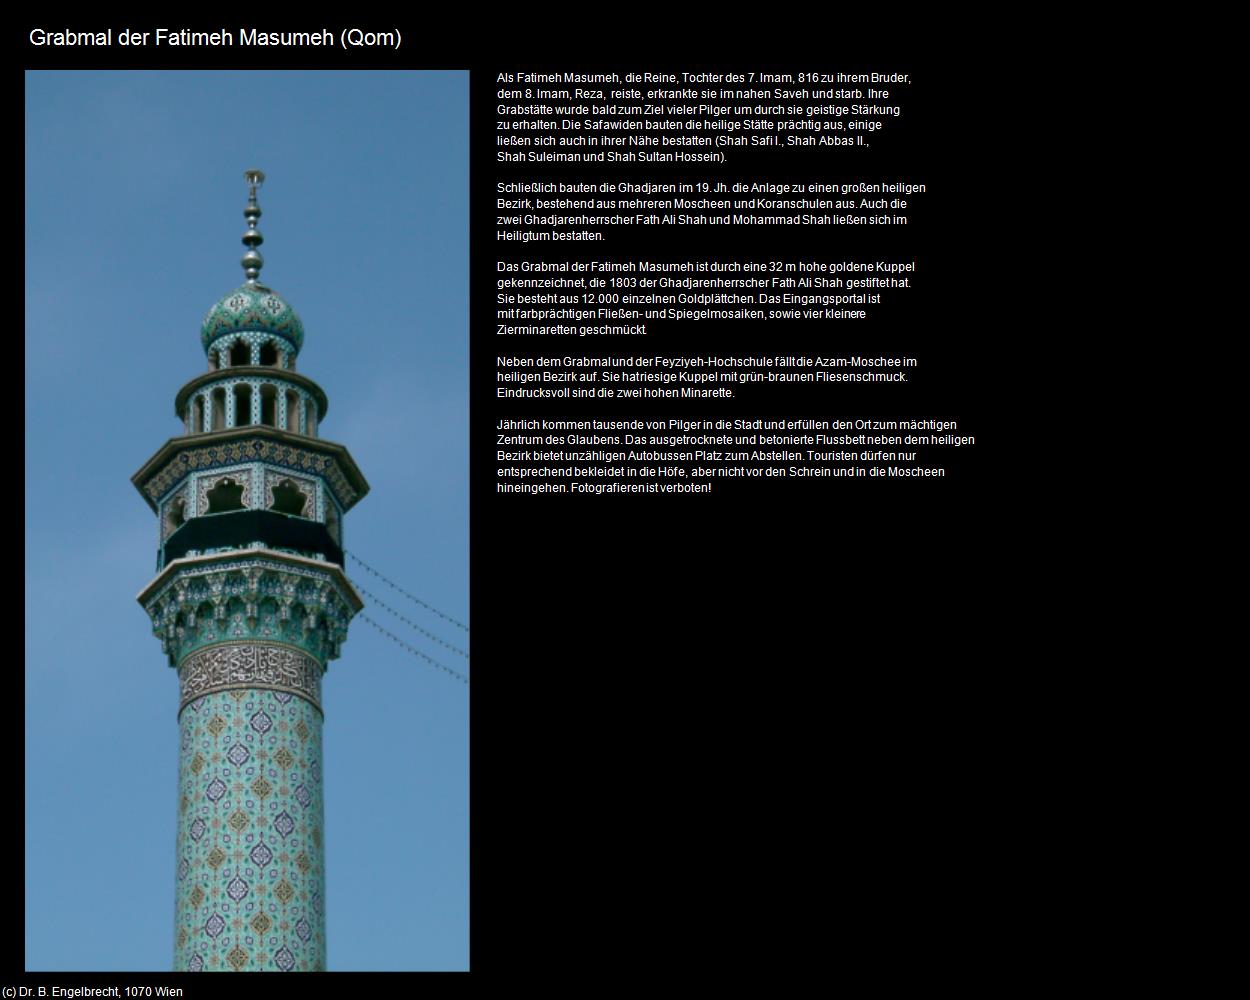 Grabmal der Fatimeh Masumeh (Qom) in Iran